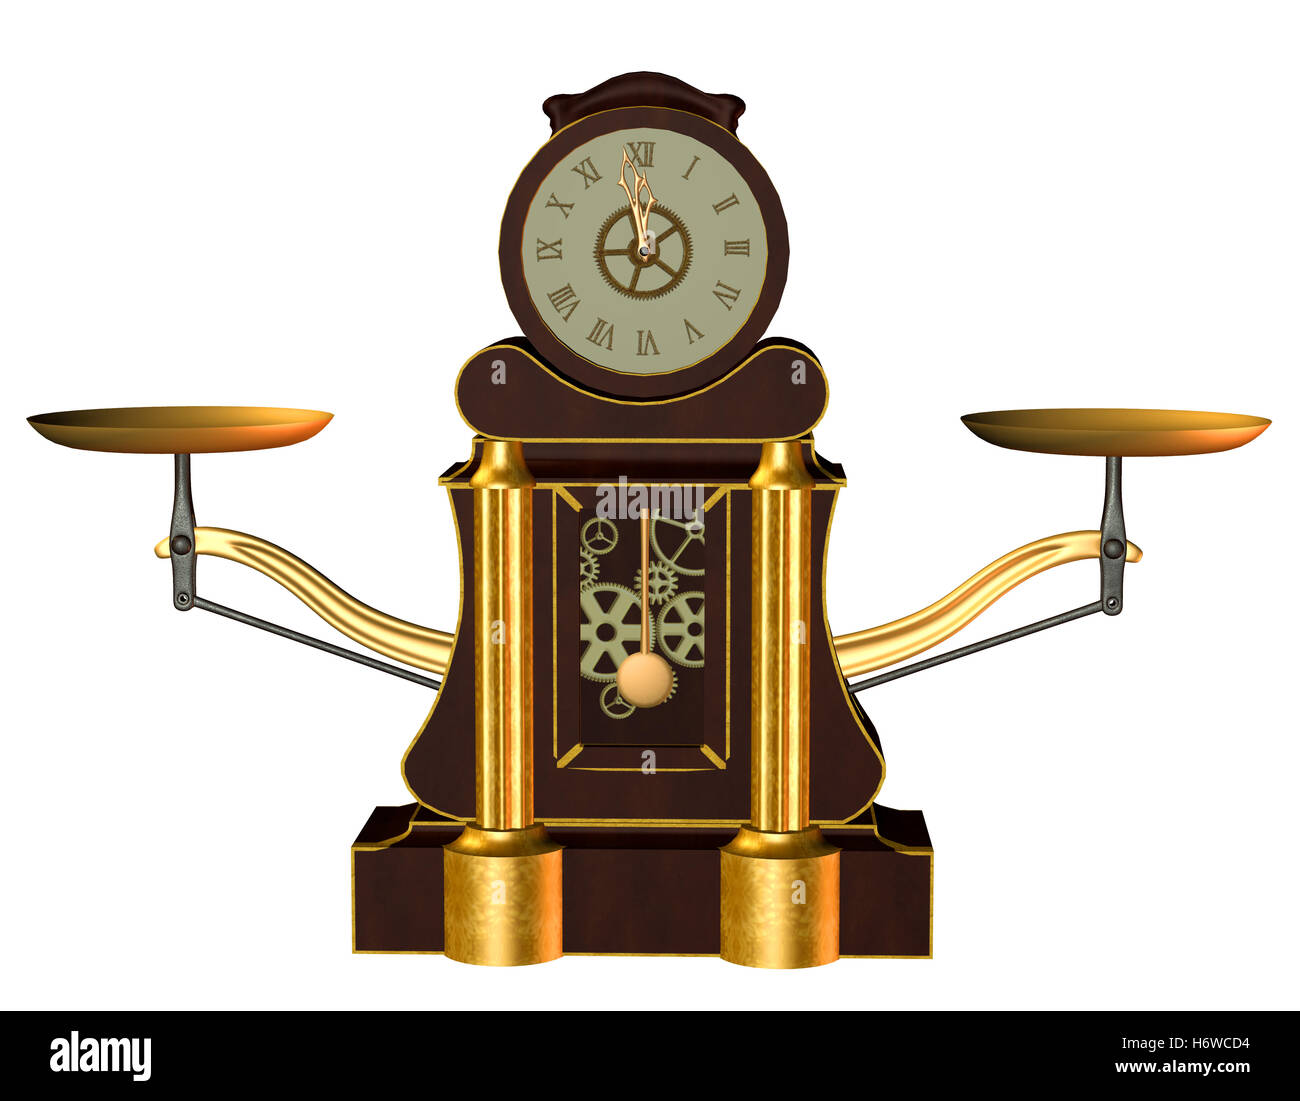 Horloge steampunk Banque d'images détourées - Alamy